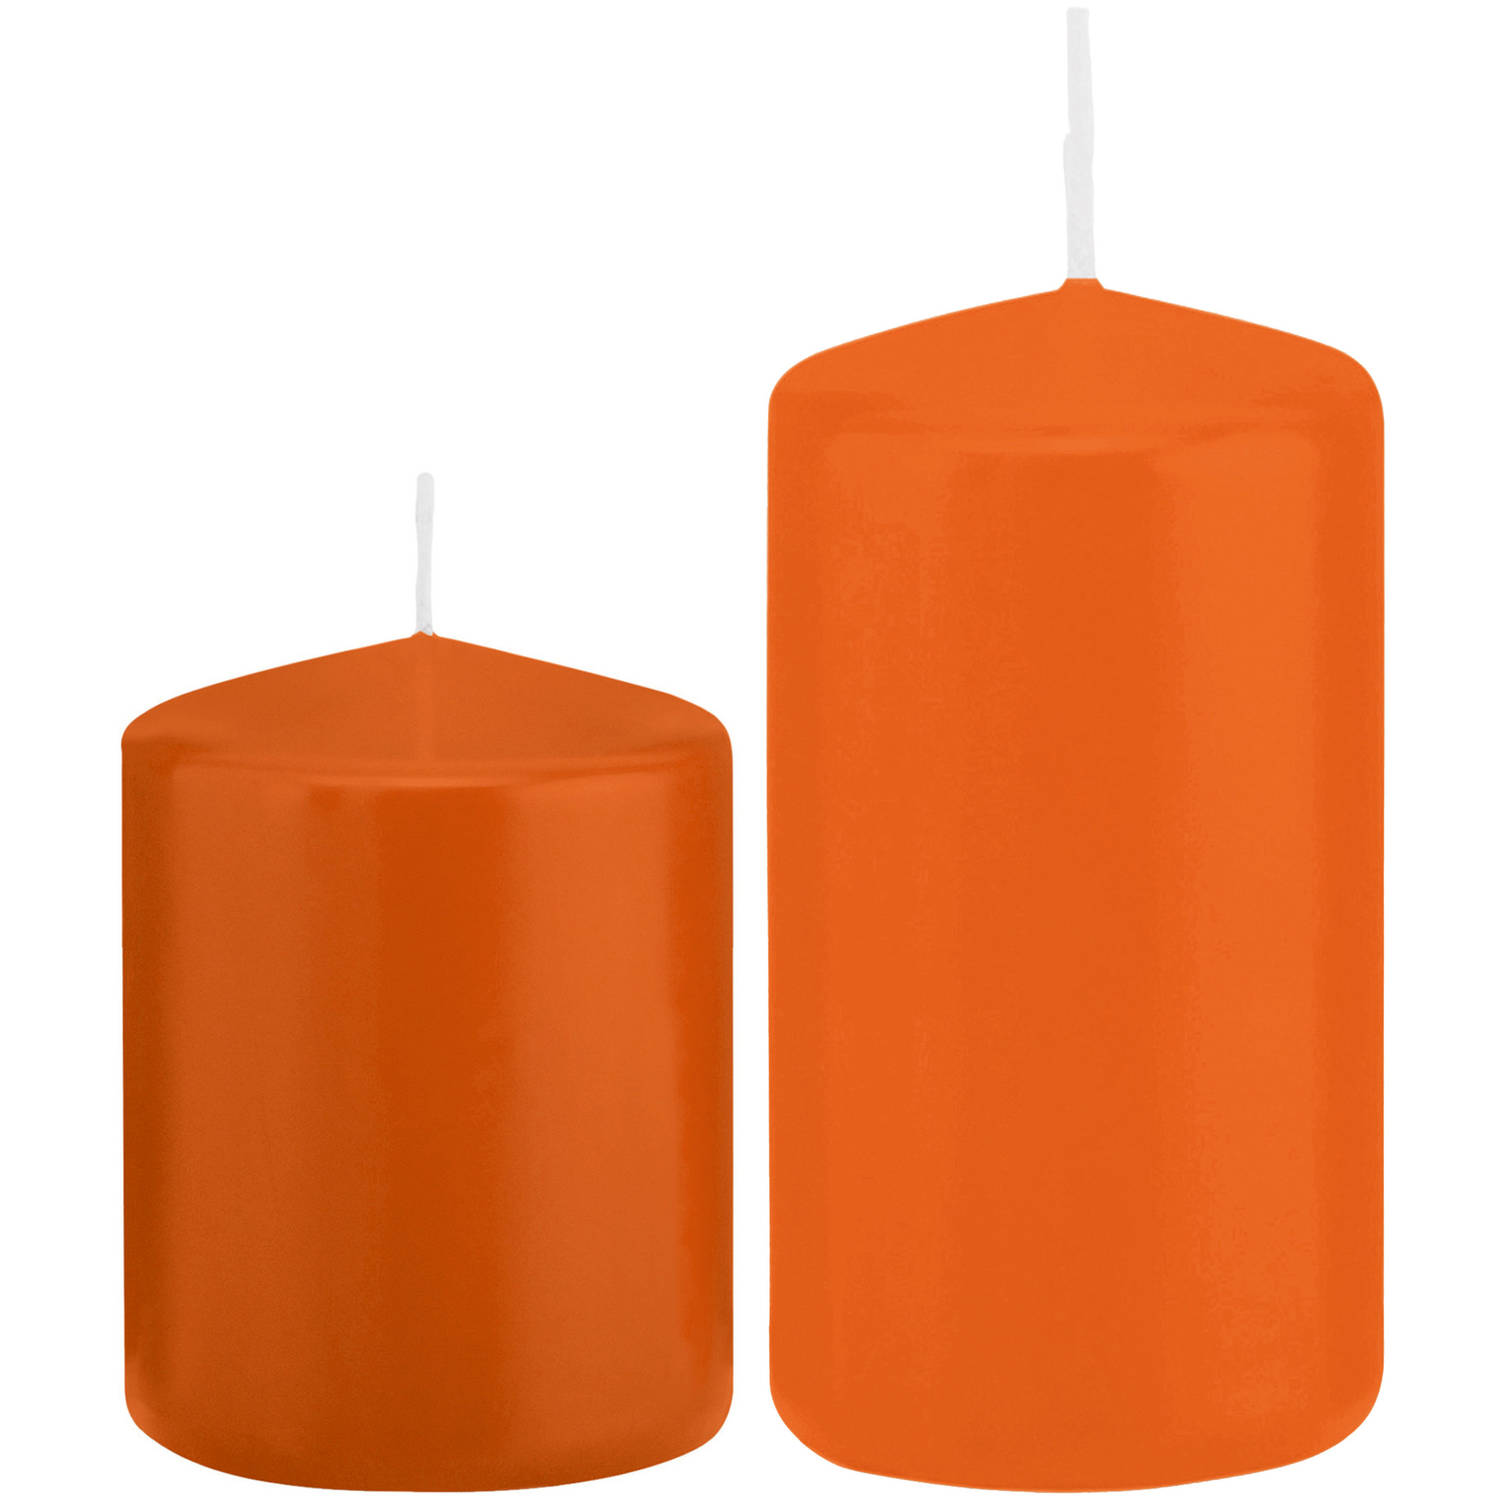 Trend Candles - Stompkaarsen set 2x stuks oranje 8 en 12 cm